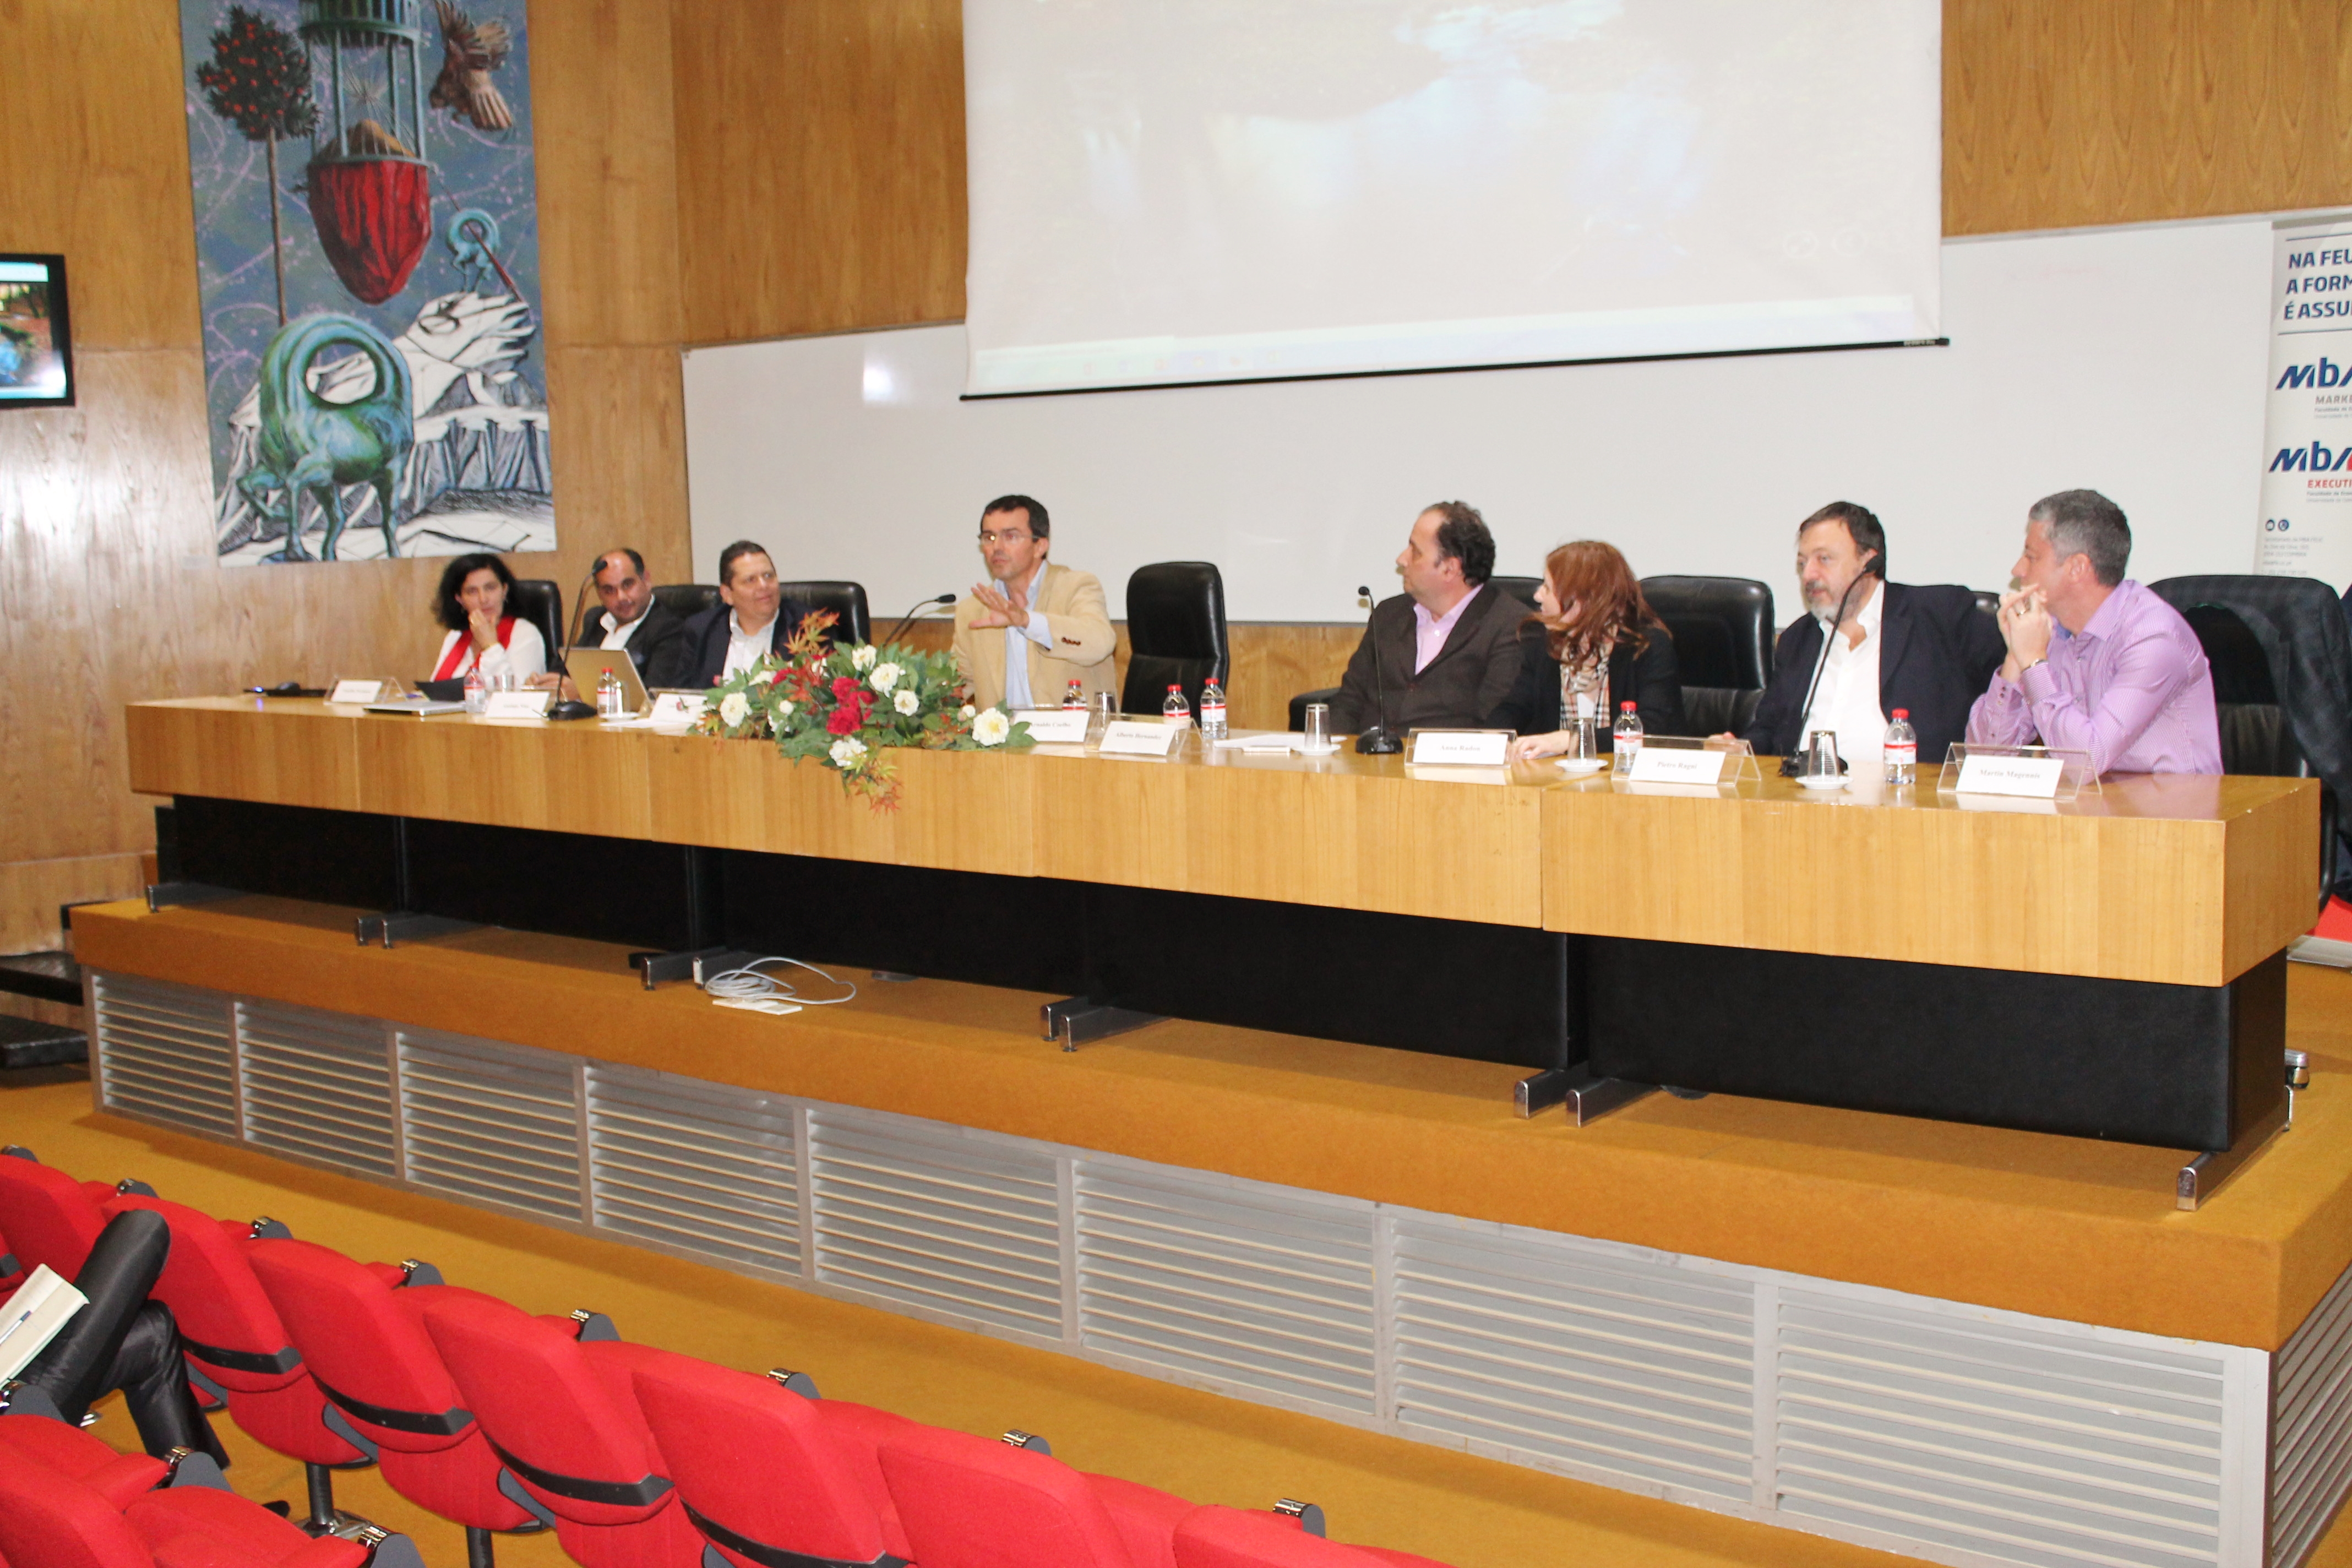 La Fundación General de la Universidad de Salamanca organiza un proyecto para la formación en gestión de crisis